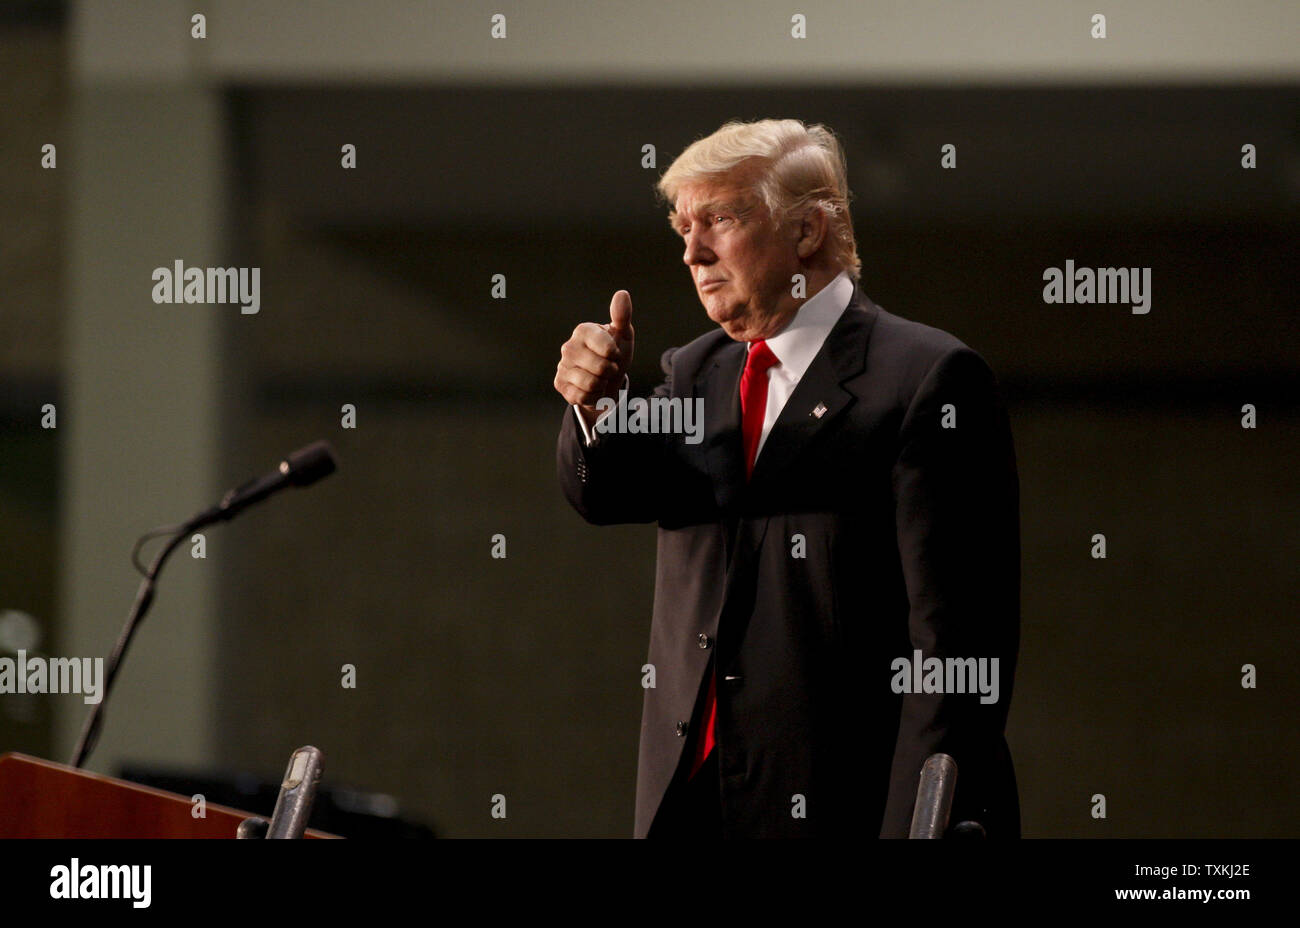 Der republikanische Präsidentschaftskandidat Donald Trump gibt einen Daumen nach oben, als er die Bühne bei einer Wahlkampfveranstaltung in Charlotte, North Carolina am 18. August 2016 verlässt. Foto von Nell Redmond/UPI Stockfoto